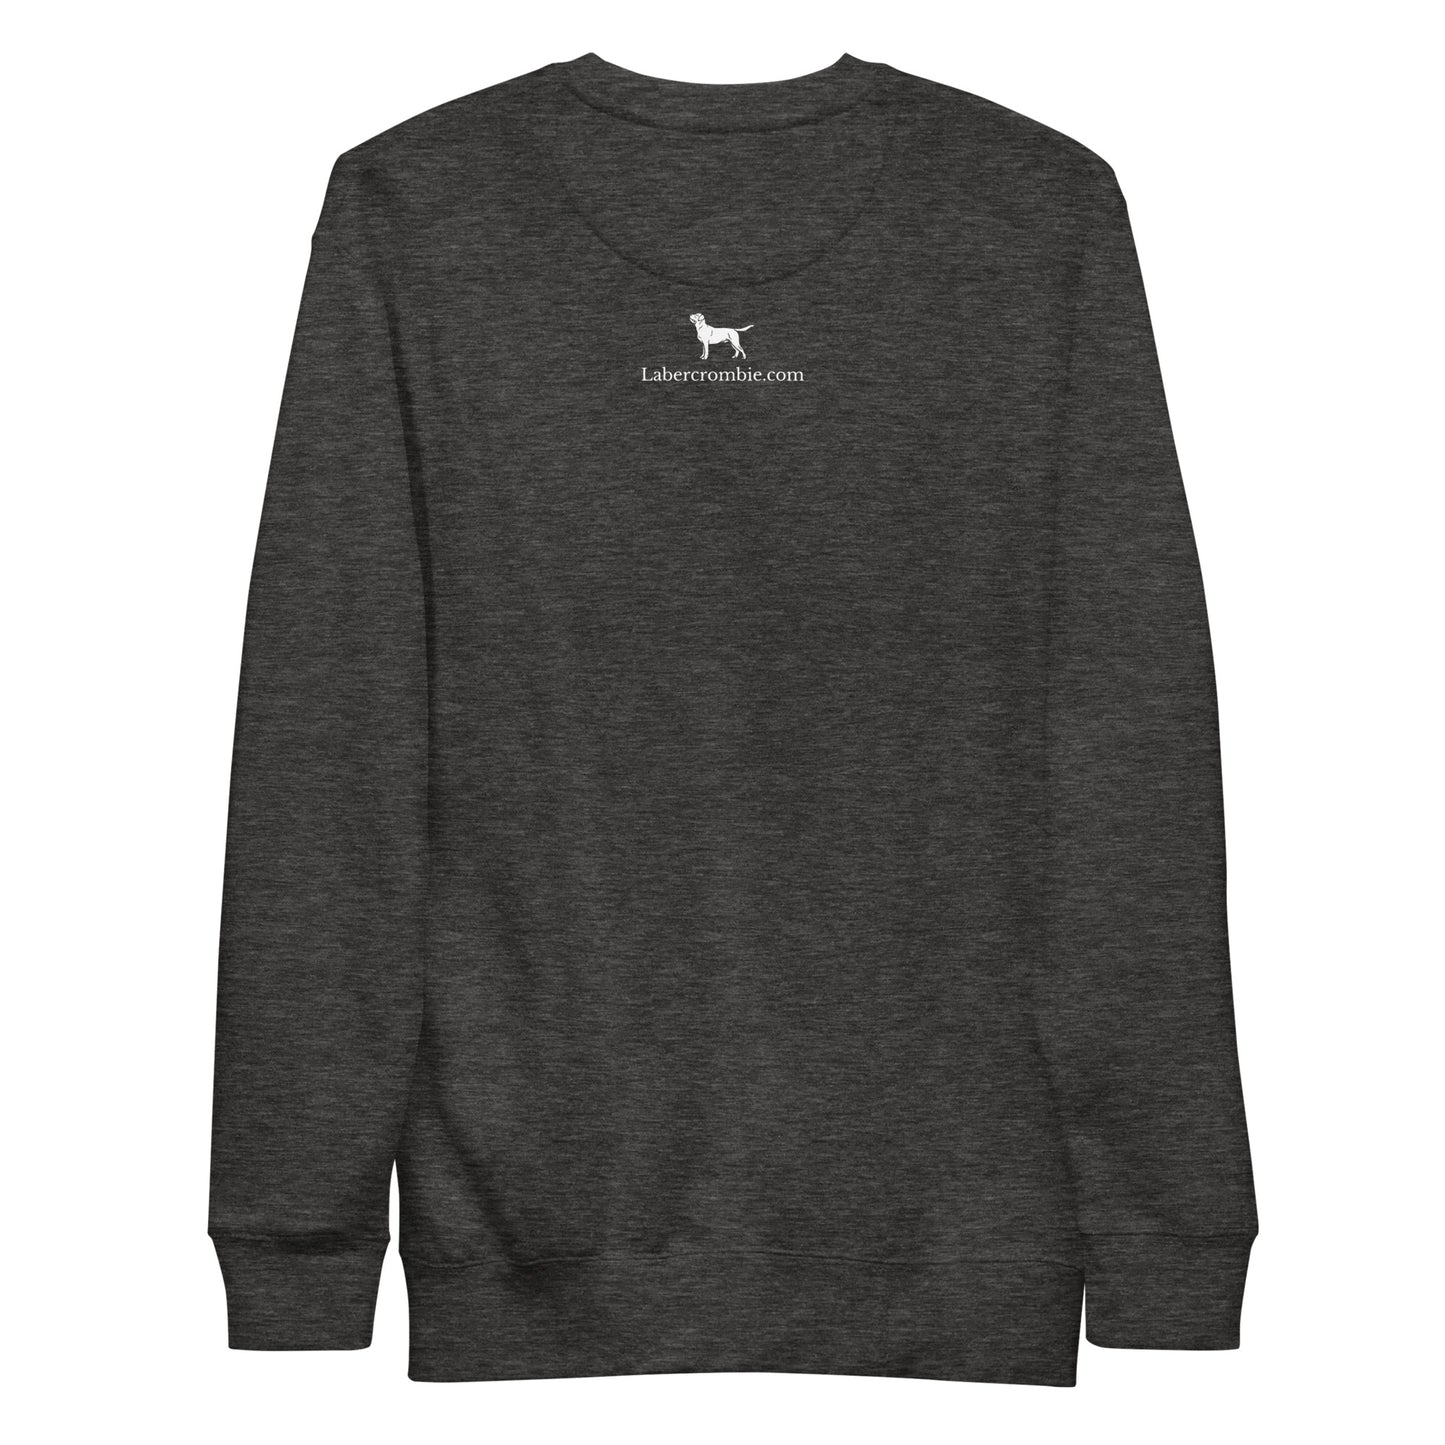 The Black Lab Unisex Premium Sweatshirt